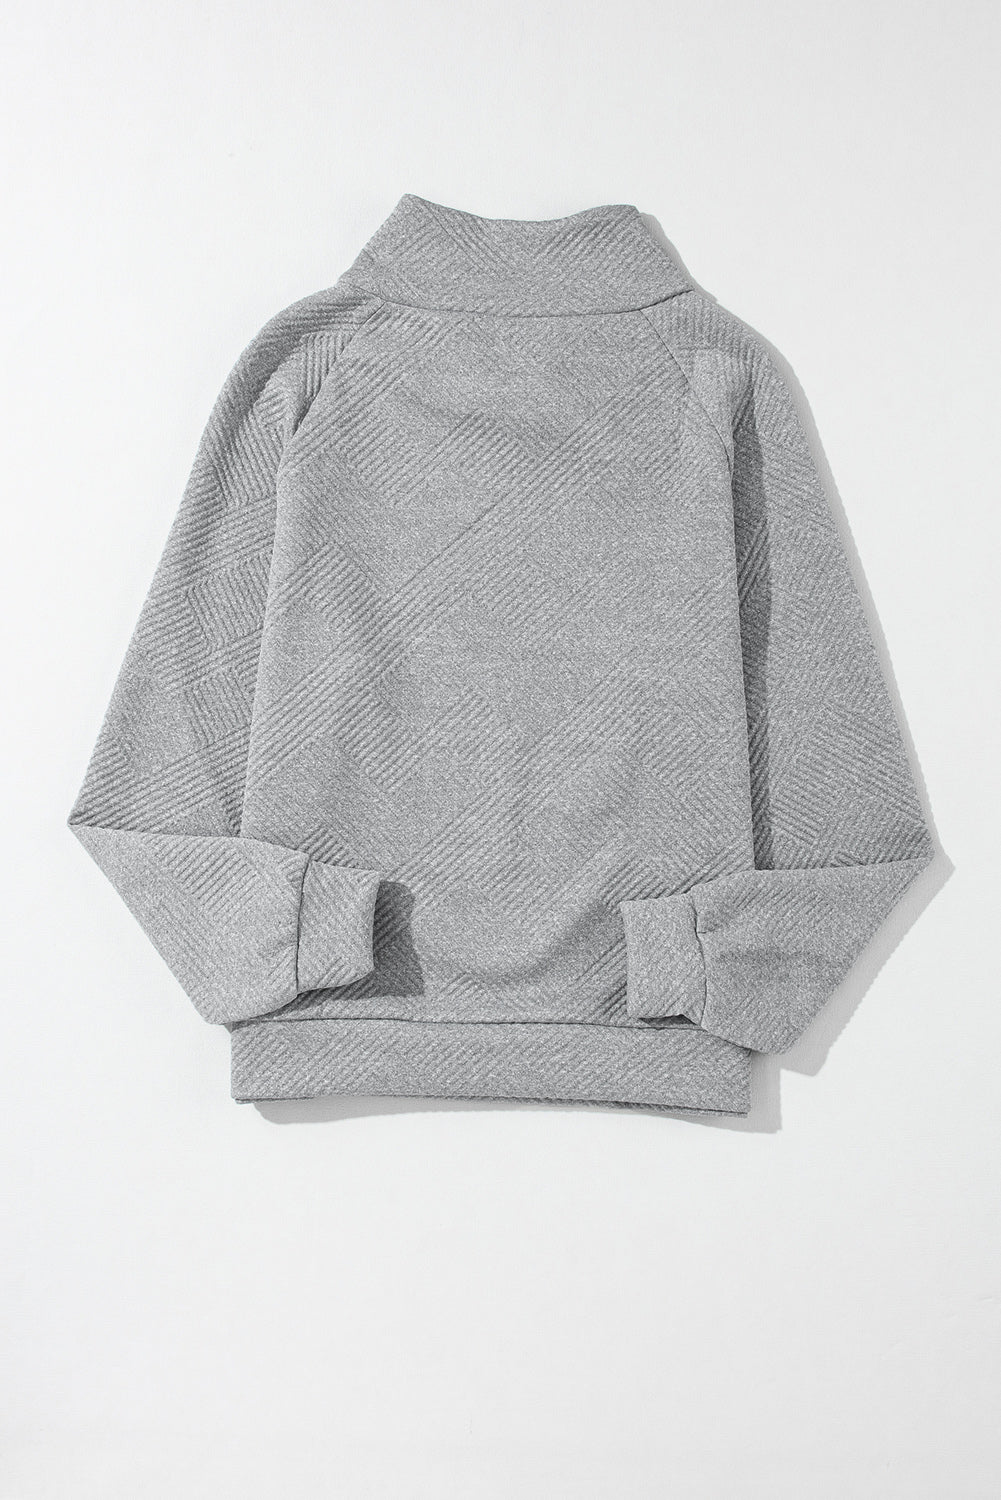 Black Asymmetric Buttons Detail High Neck Textured Sweatshirt